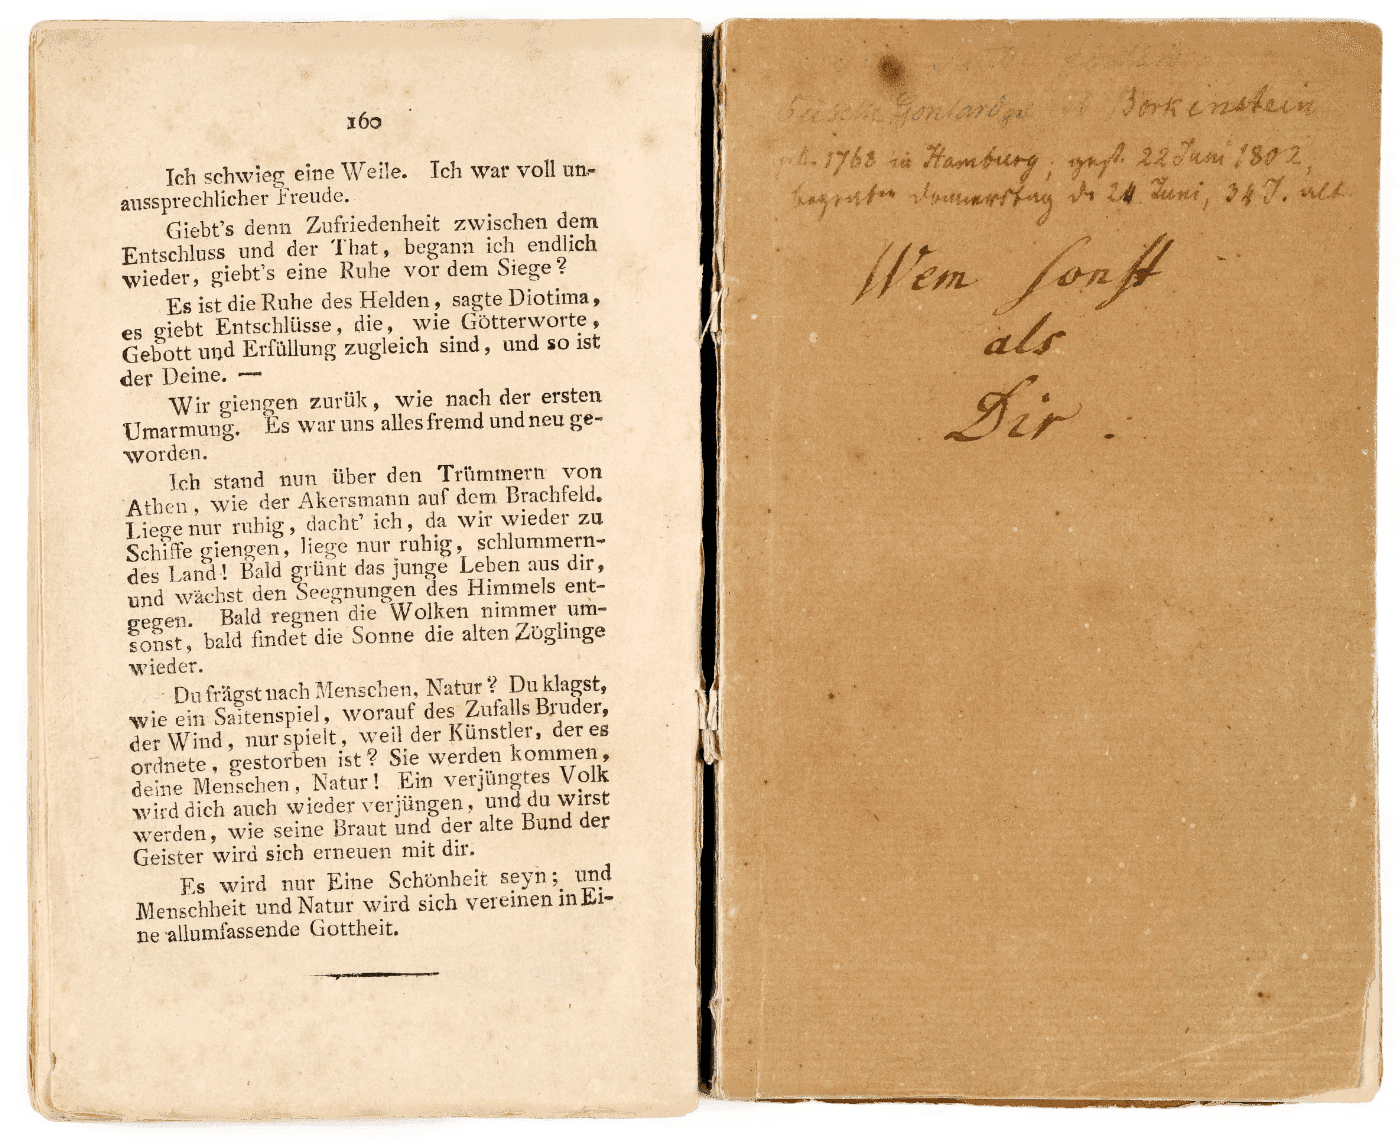 Hölderlins Buch ›Hyperion‹. Die rechte Seite zeigt eine handschriftliche Widmung von Hölderlin: »Wem sonst als dir«